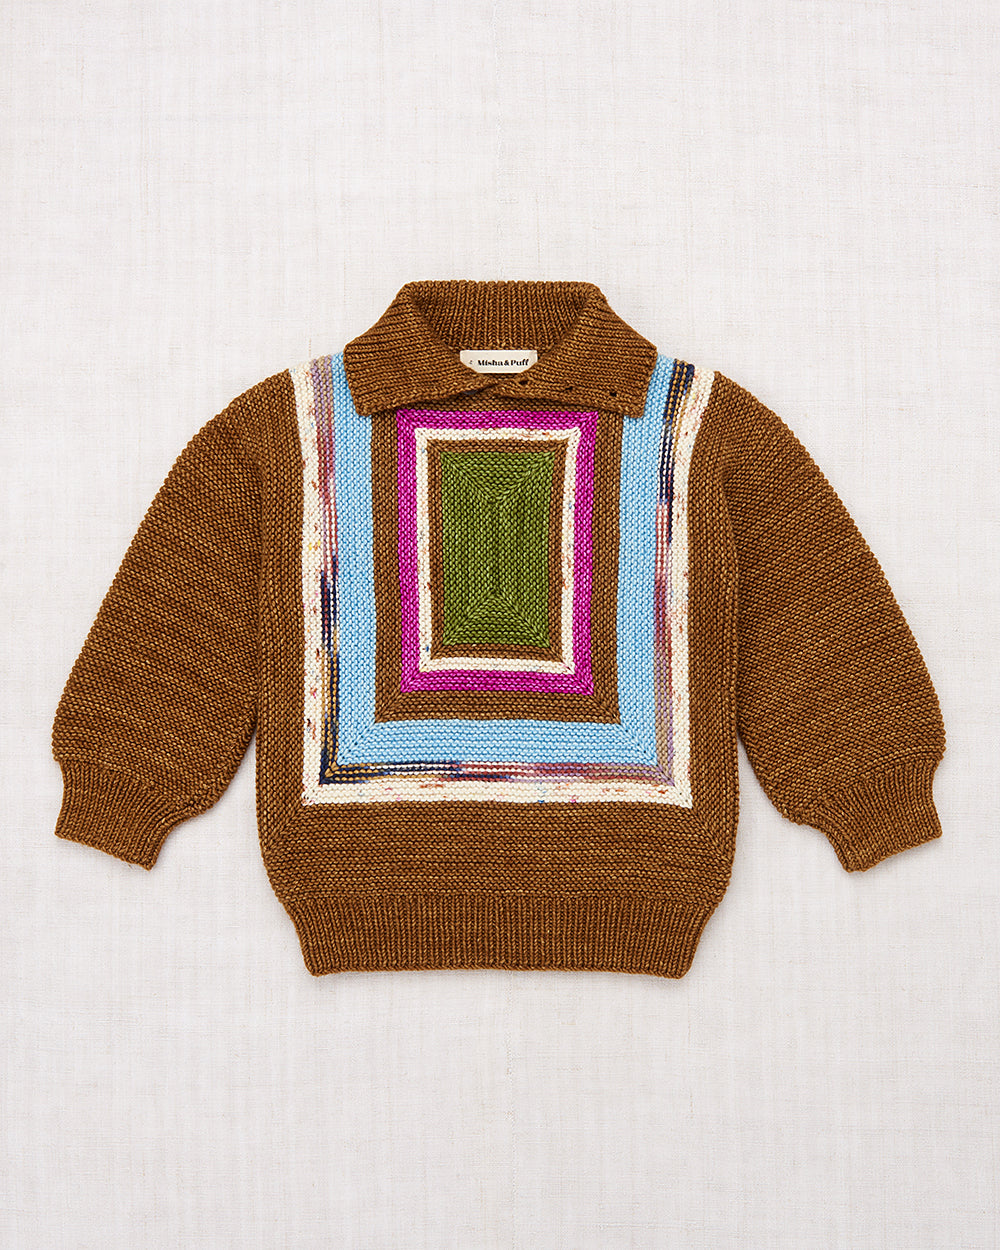 Log Cabin Sweater - Misha & Puff